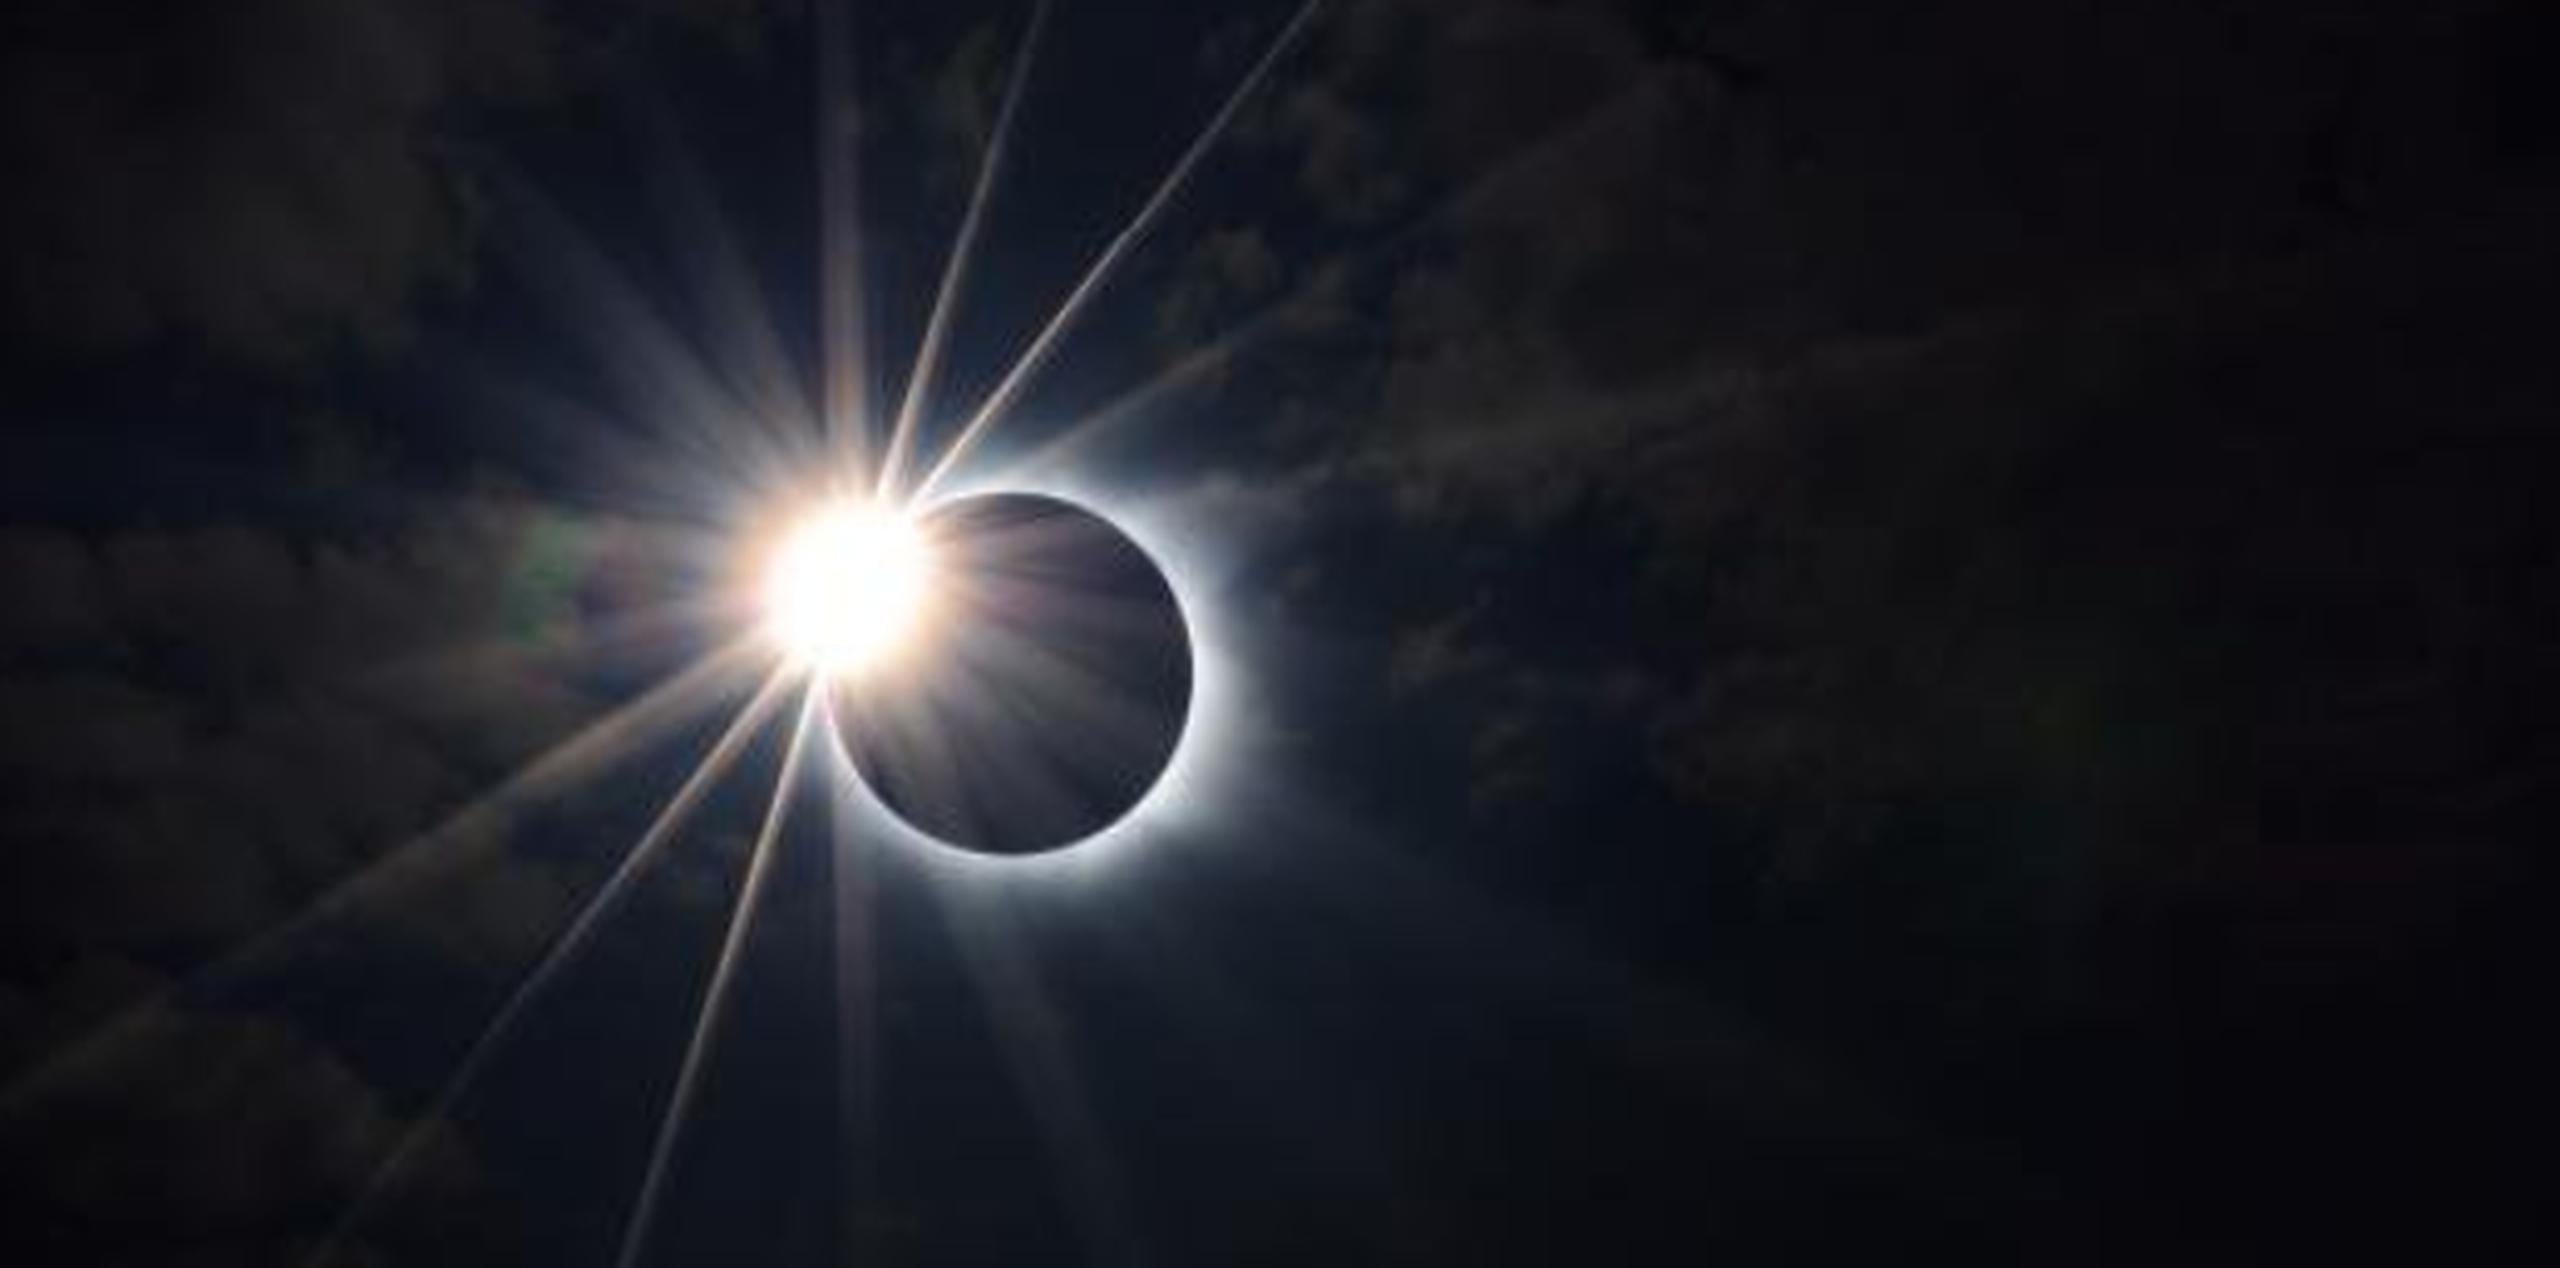 “Mirar unos segundos, sin las gafas especiales para ver el eclipse, eso sí puede causar daño permanente al ojo”, dijo el doctor Ian Piovanetti. (Archivo)